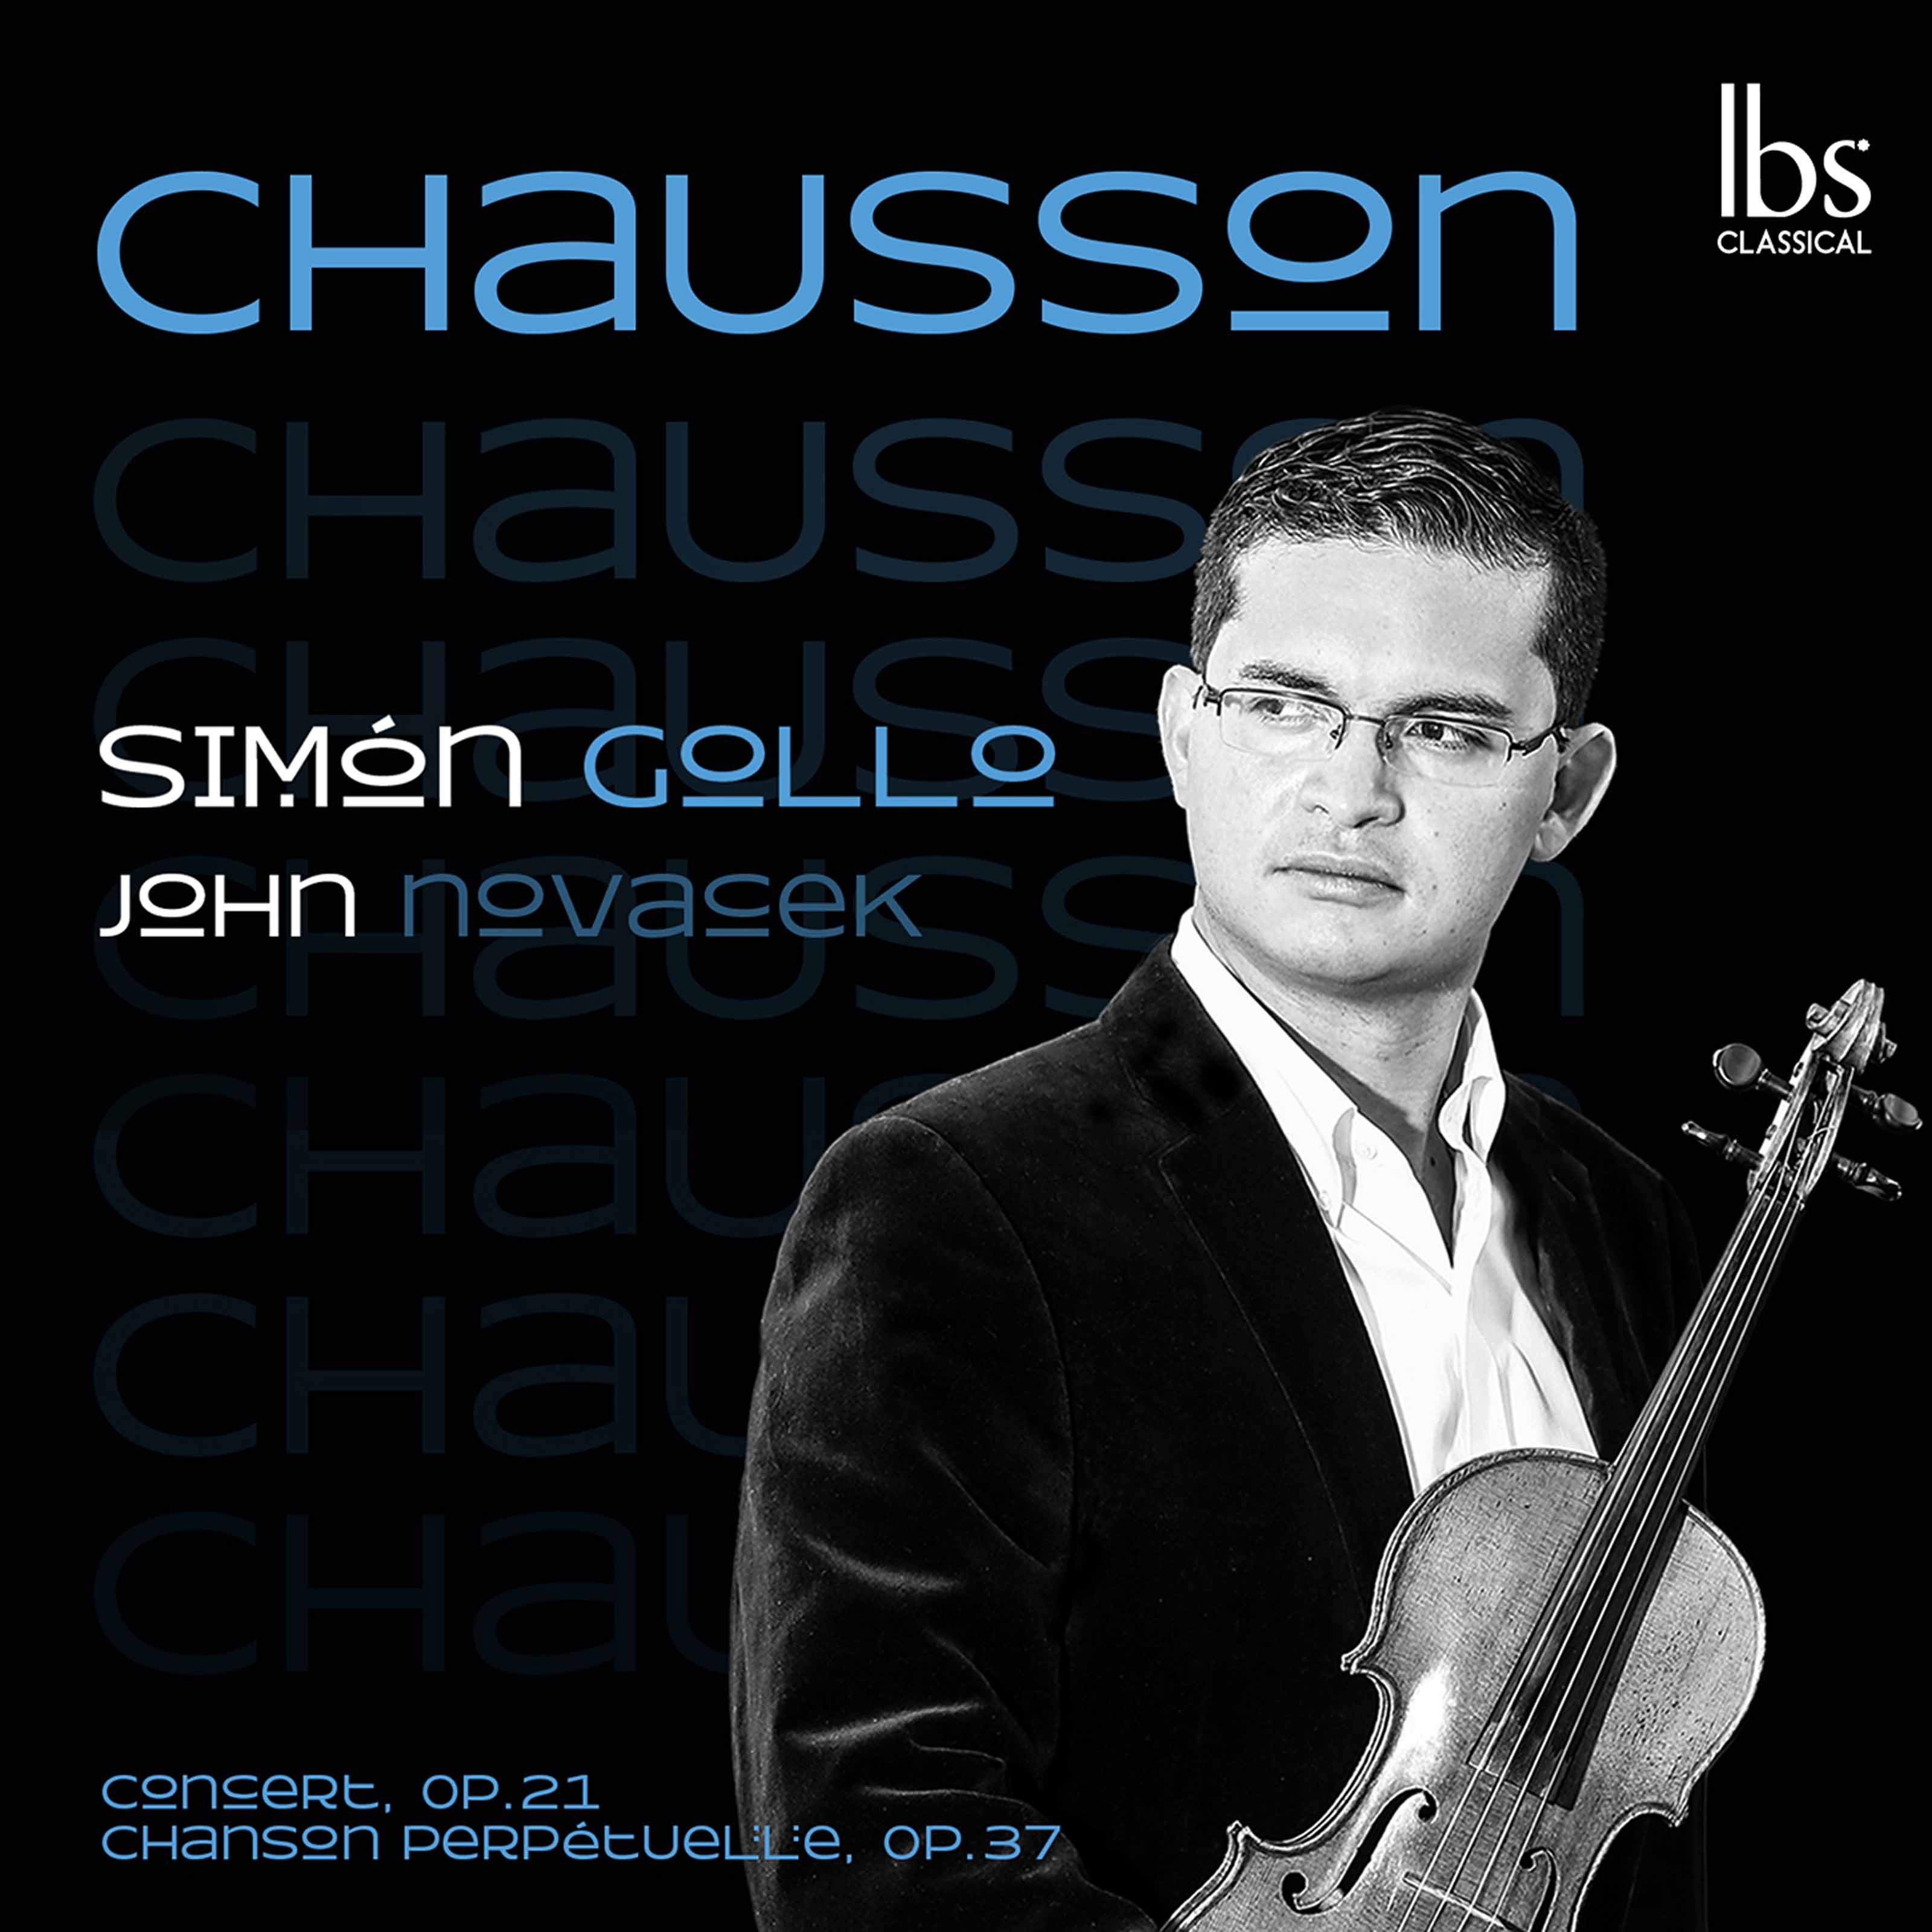 Simon Gollo – Chausson Concert in D Major & Chanson perpetuelle (2020) [FLAC 24bit/96kHz]